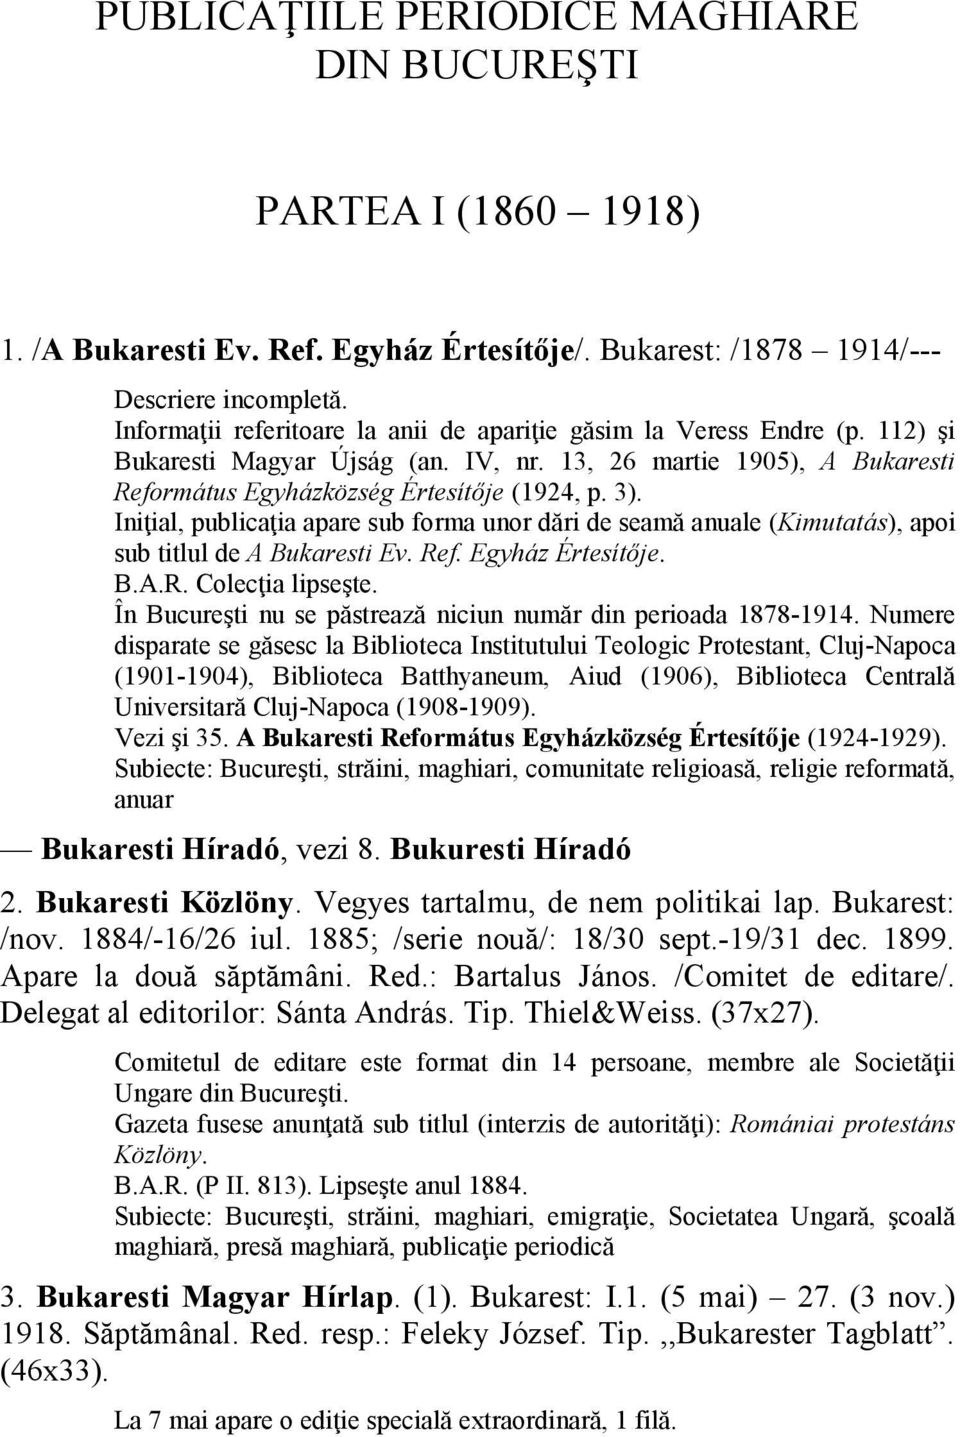 Iniţial, publicaţia apare sub forma unor dări de seamă anuale (Kimutatás), apoi sub titlul de A Bukaresti Ev. Ref. Egyház Értesítője. B.A.R. Colecţia lipseşte.